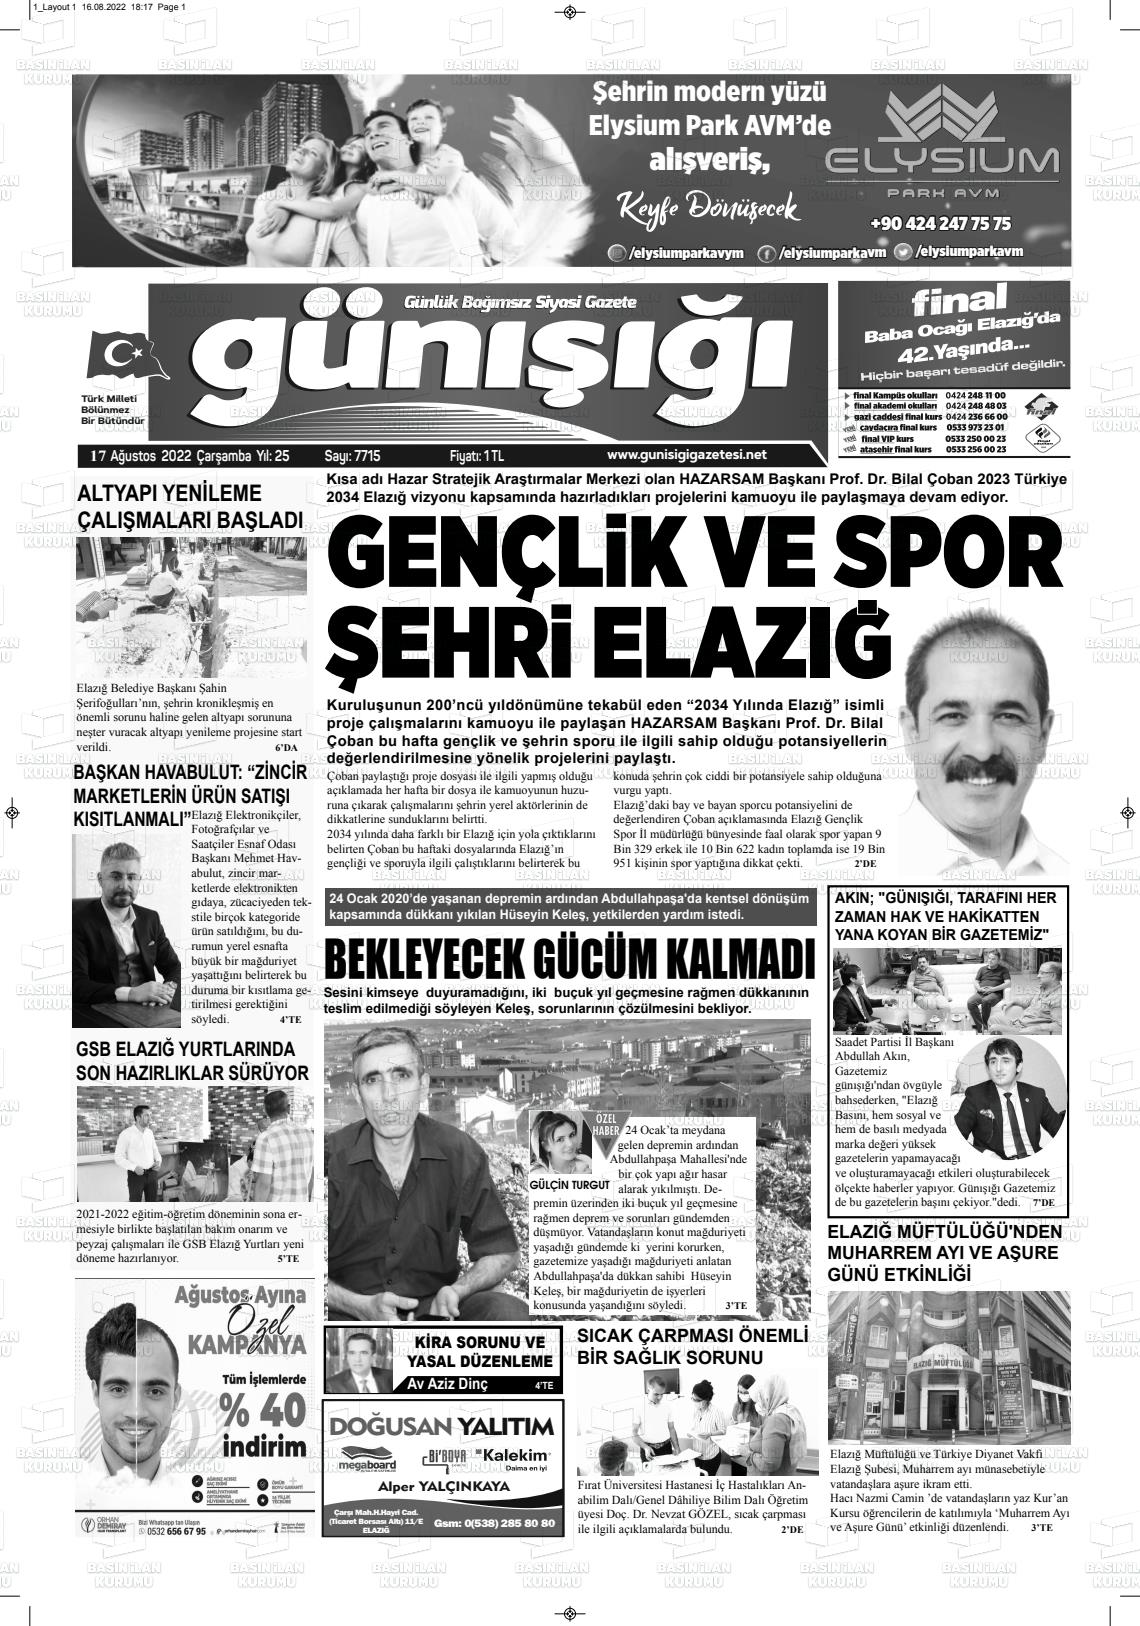 17 Ağustos 2022 Gün Işığı Gazete Manşeti